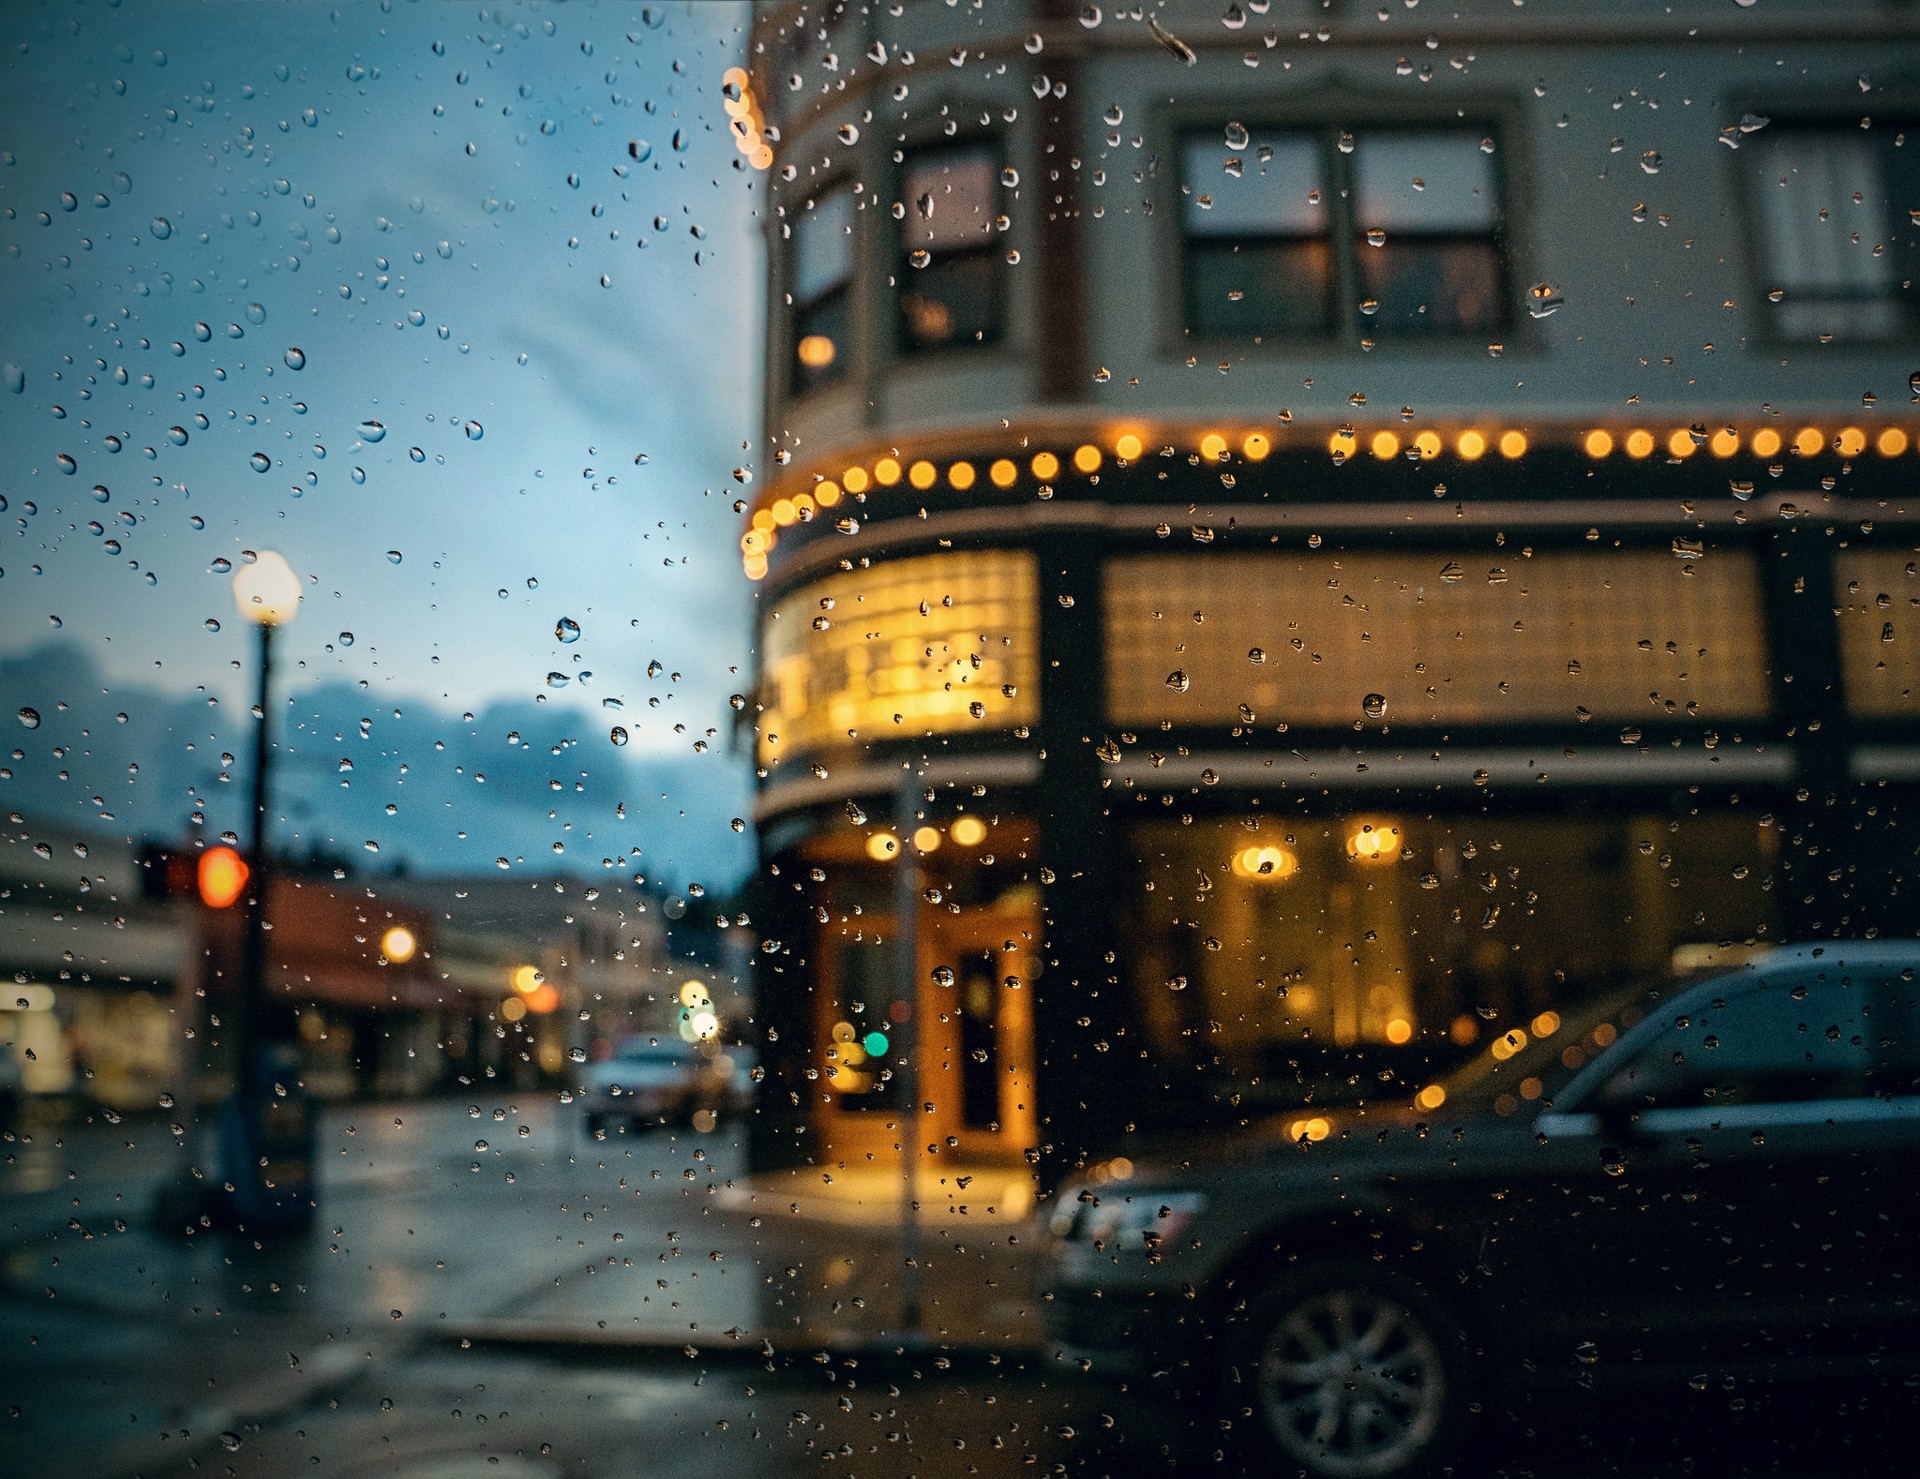 Rain in Astoria by Jody Miller